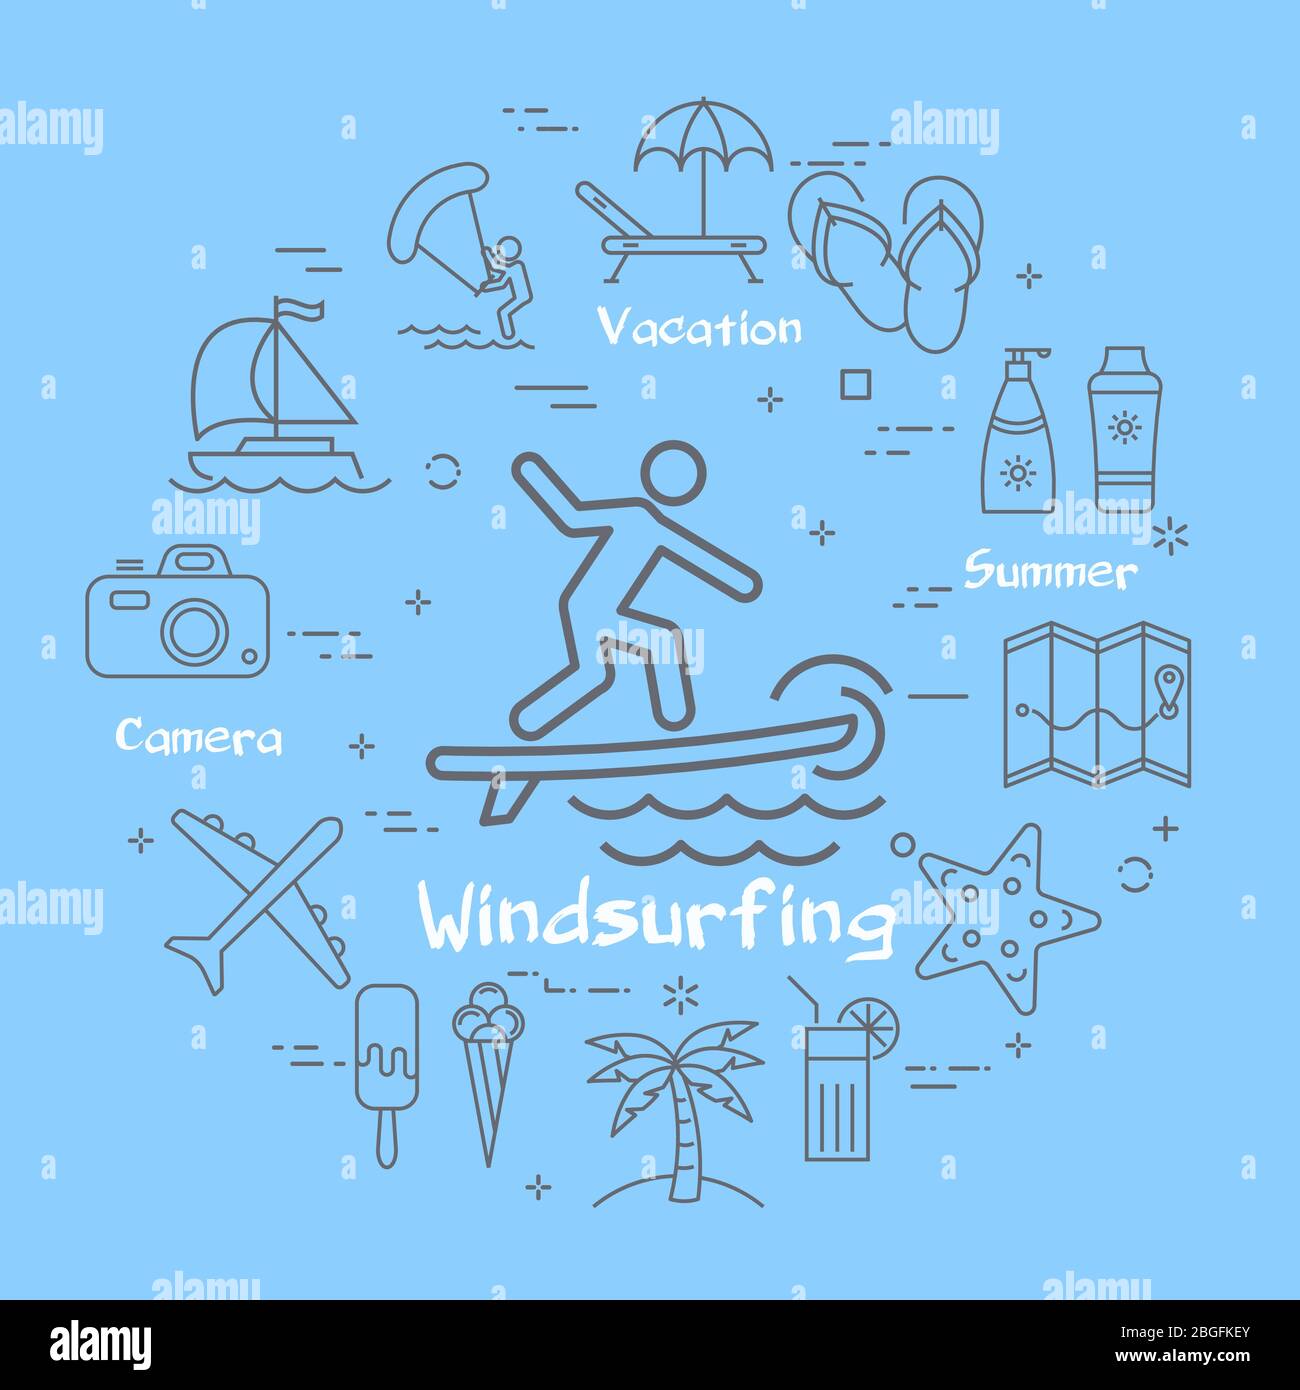 Vector linrar blau Konzept der Sommerzeit mit Windsurf-Symbol Stock Vektor